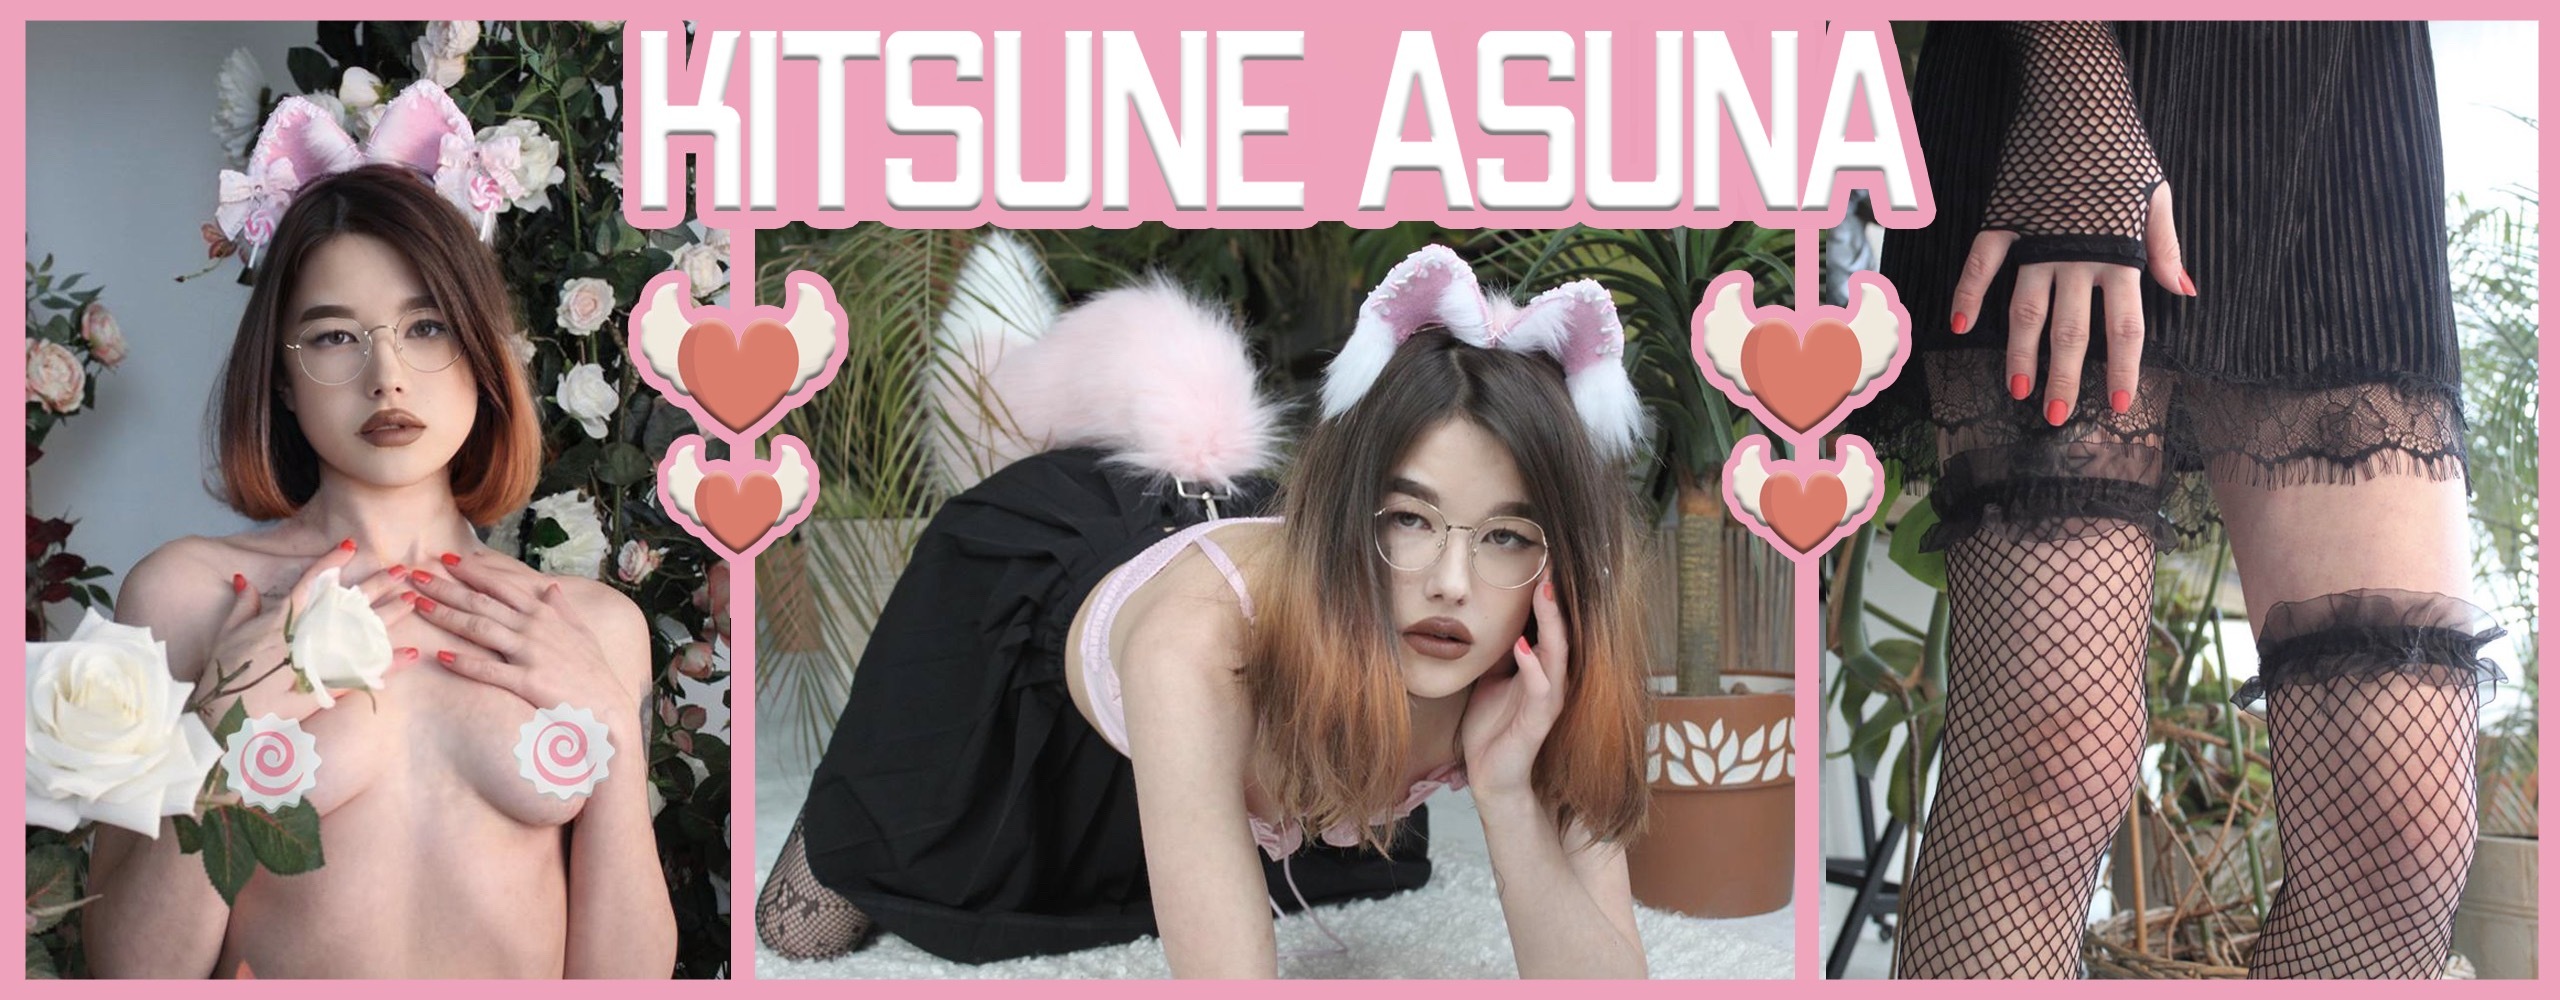 kitsune_asuna